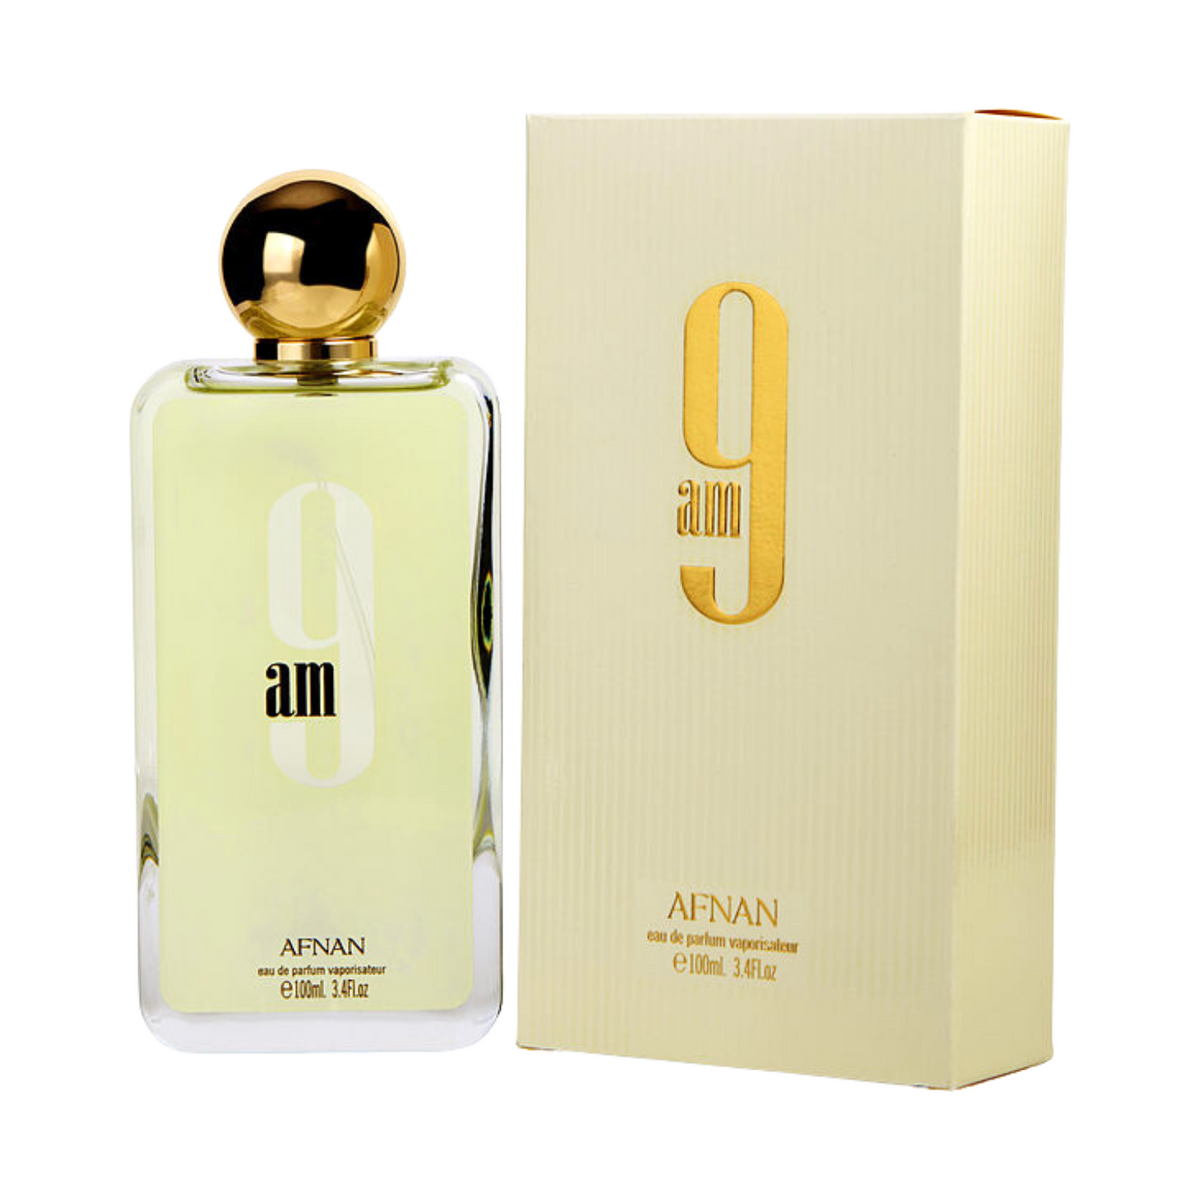 afnan-9am-gold-perfume-for-men-women-eau-de-parfum-100ml